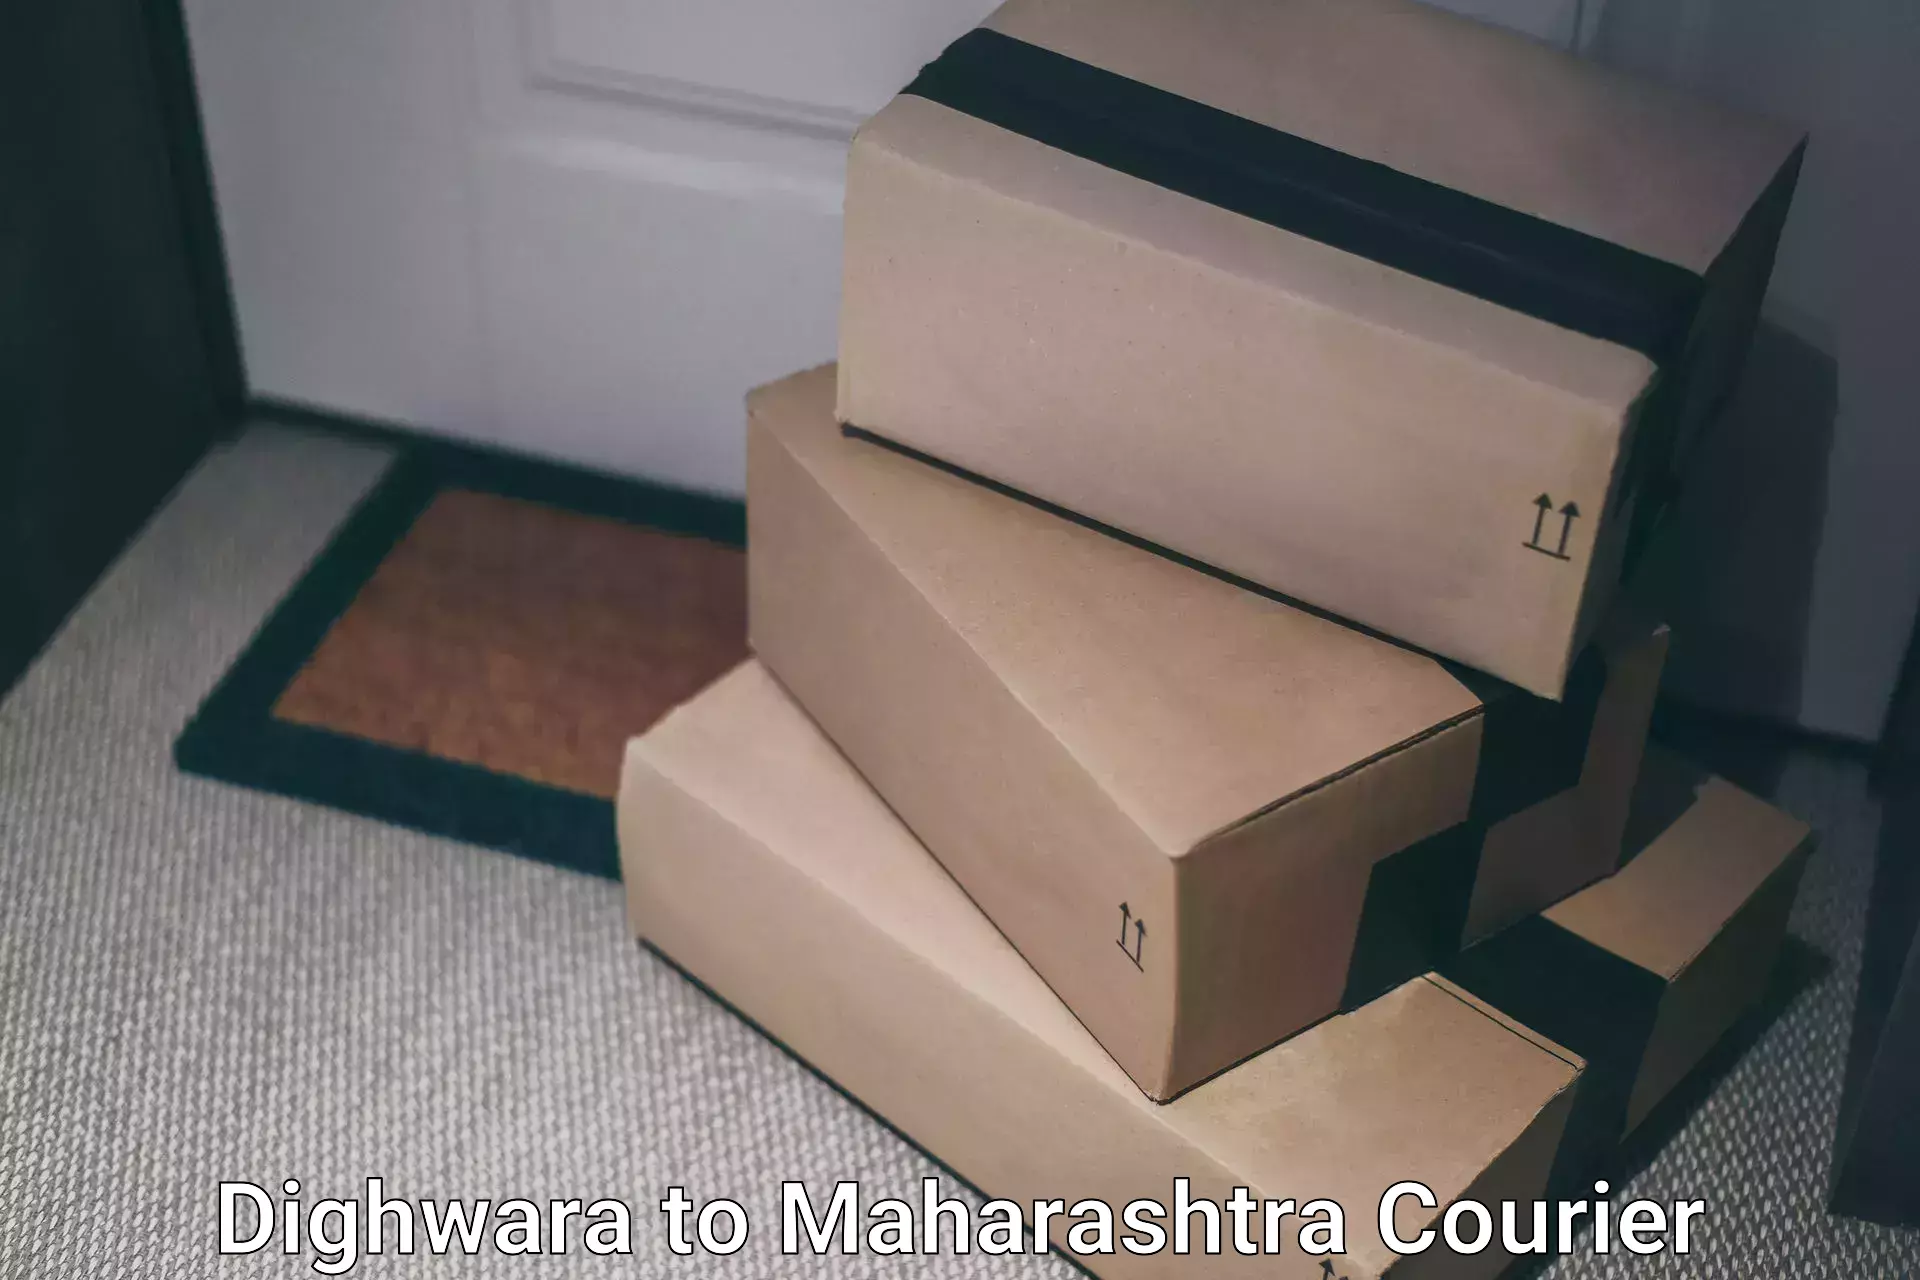 Doorstep delivery service Dighwara to Panvel